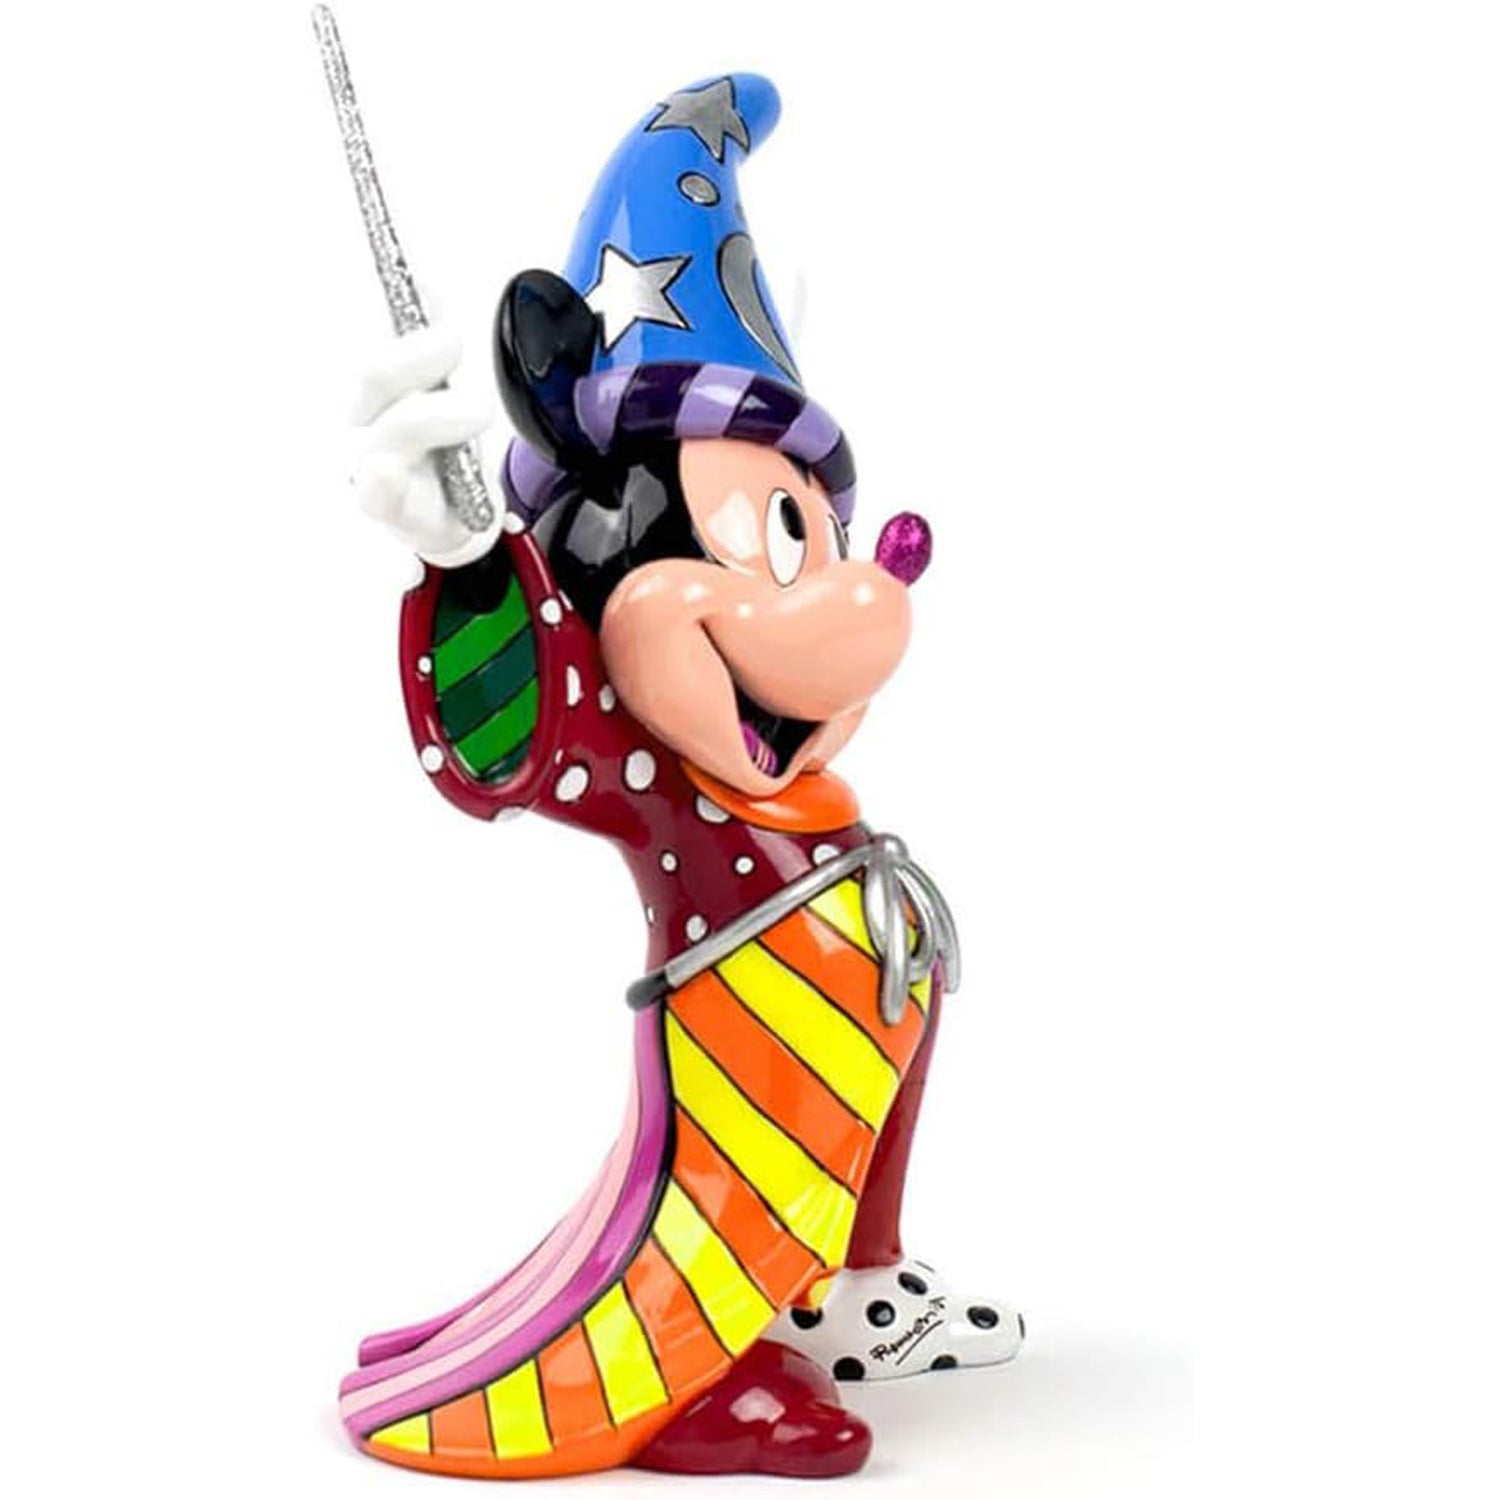 Mickey-der-Zauberer-Britto-berlindeluxe-zauberhut-zauberstab-mantel-seite